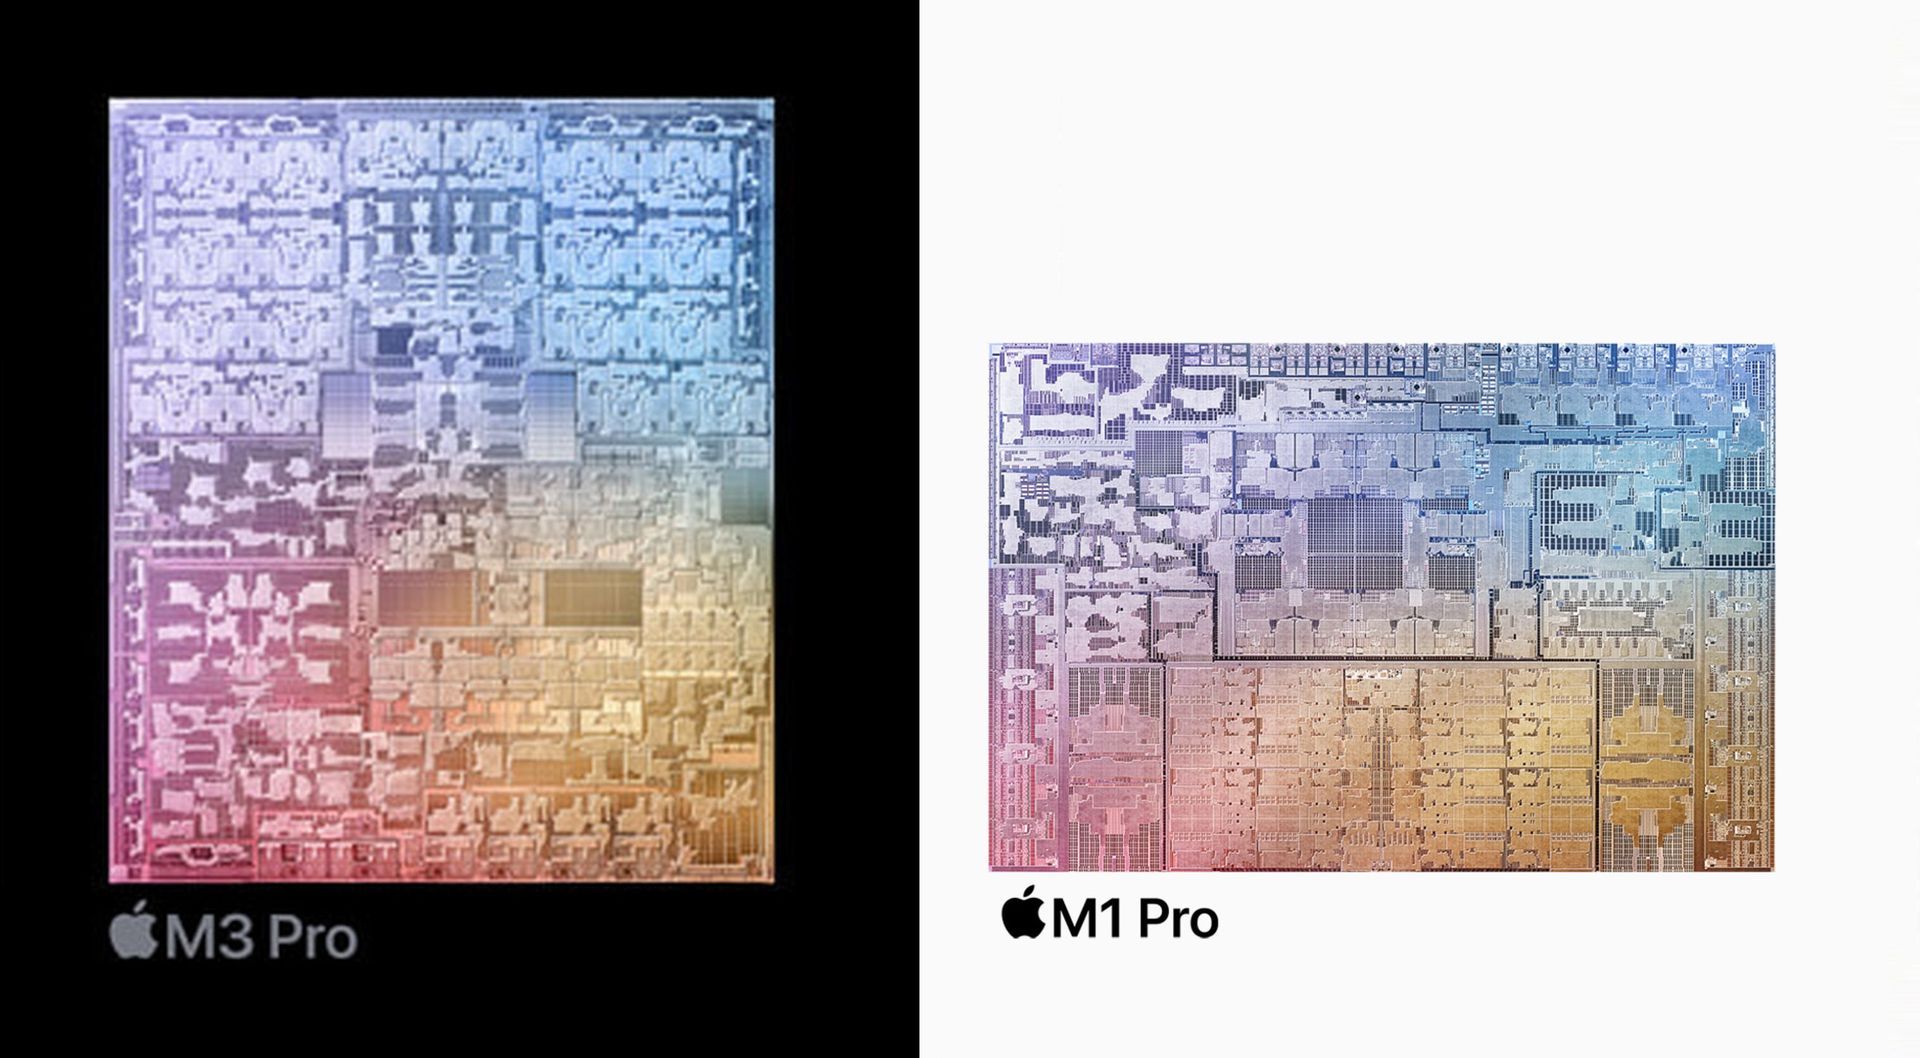 M1 Pro versus M3 Pro